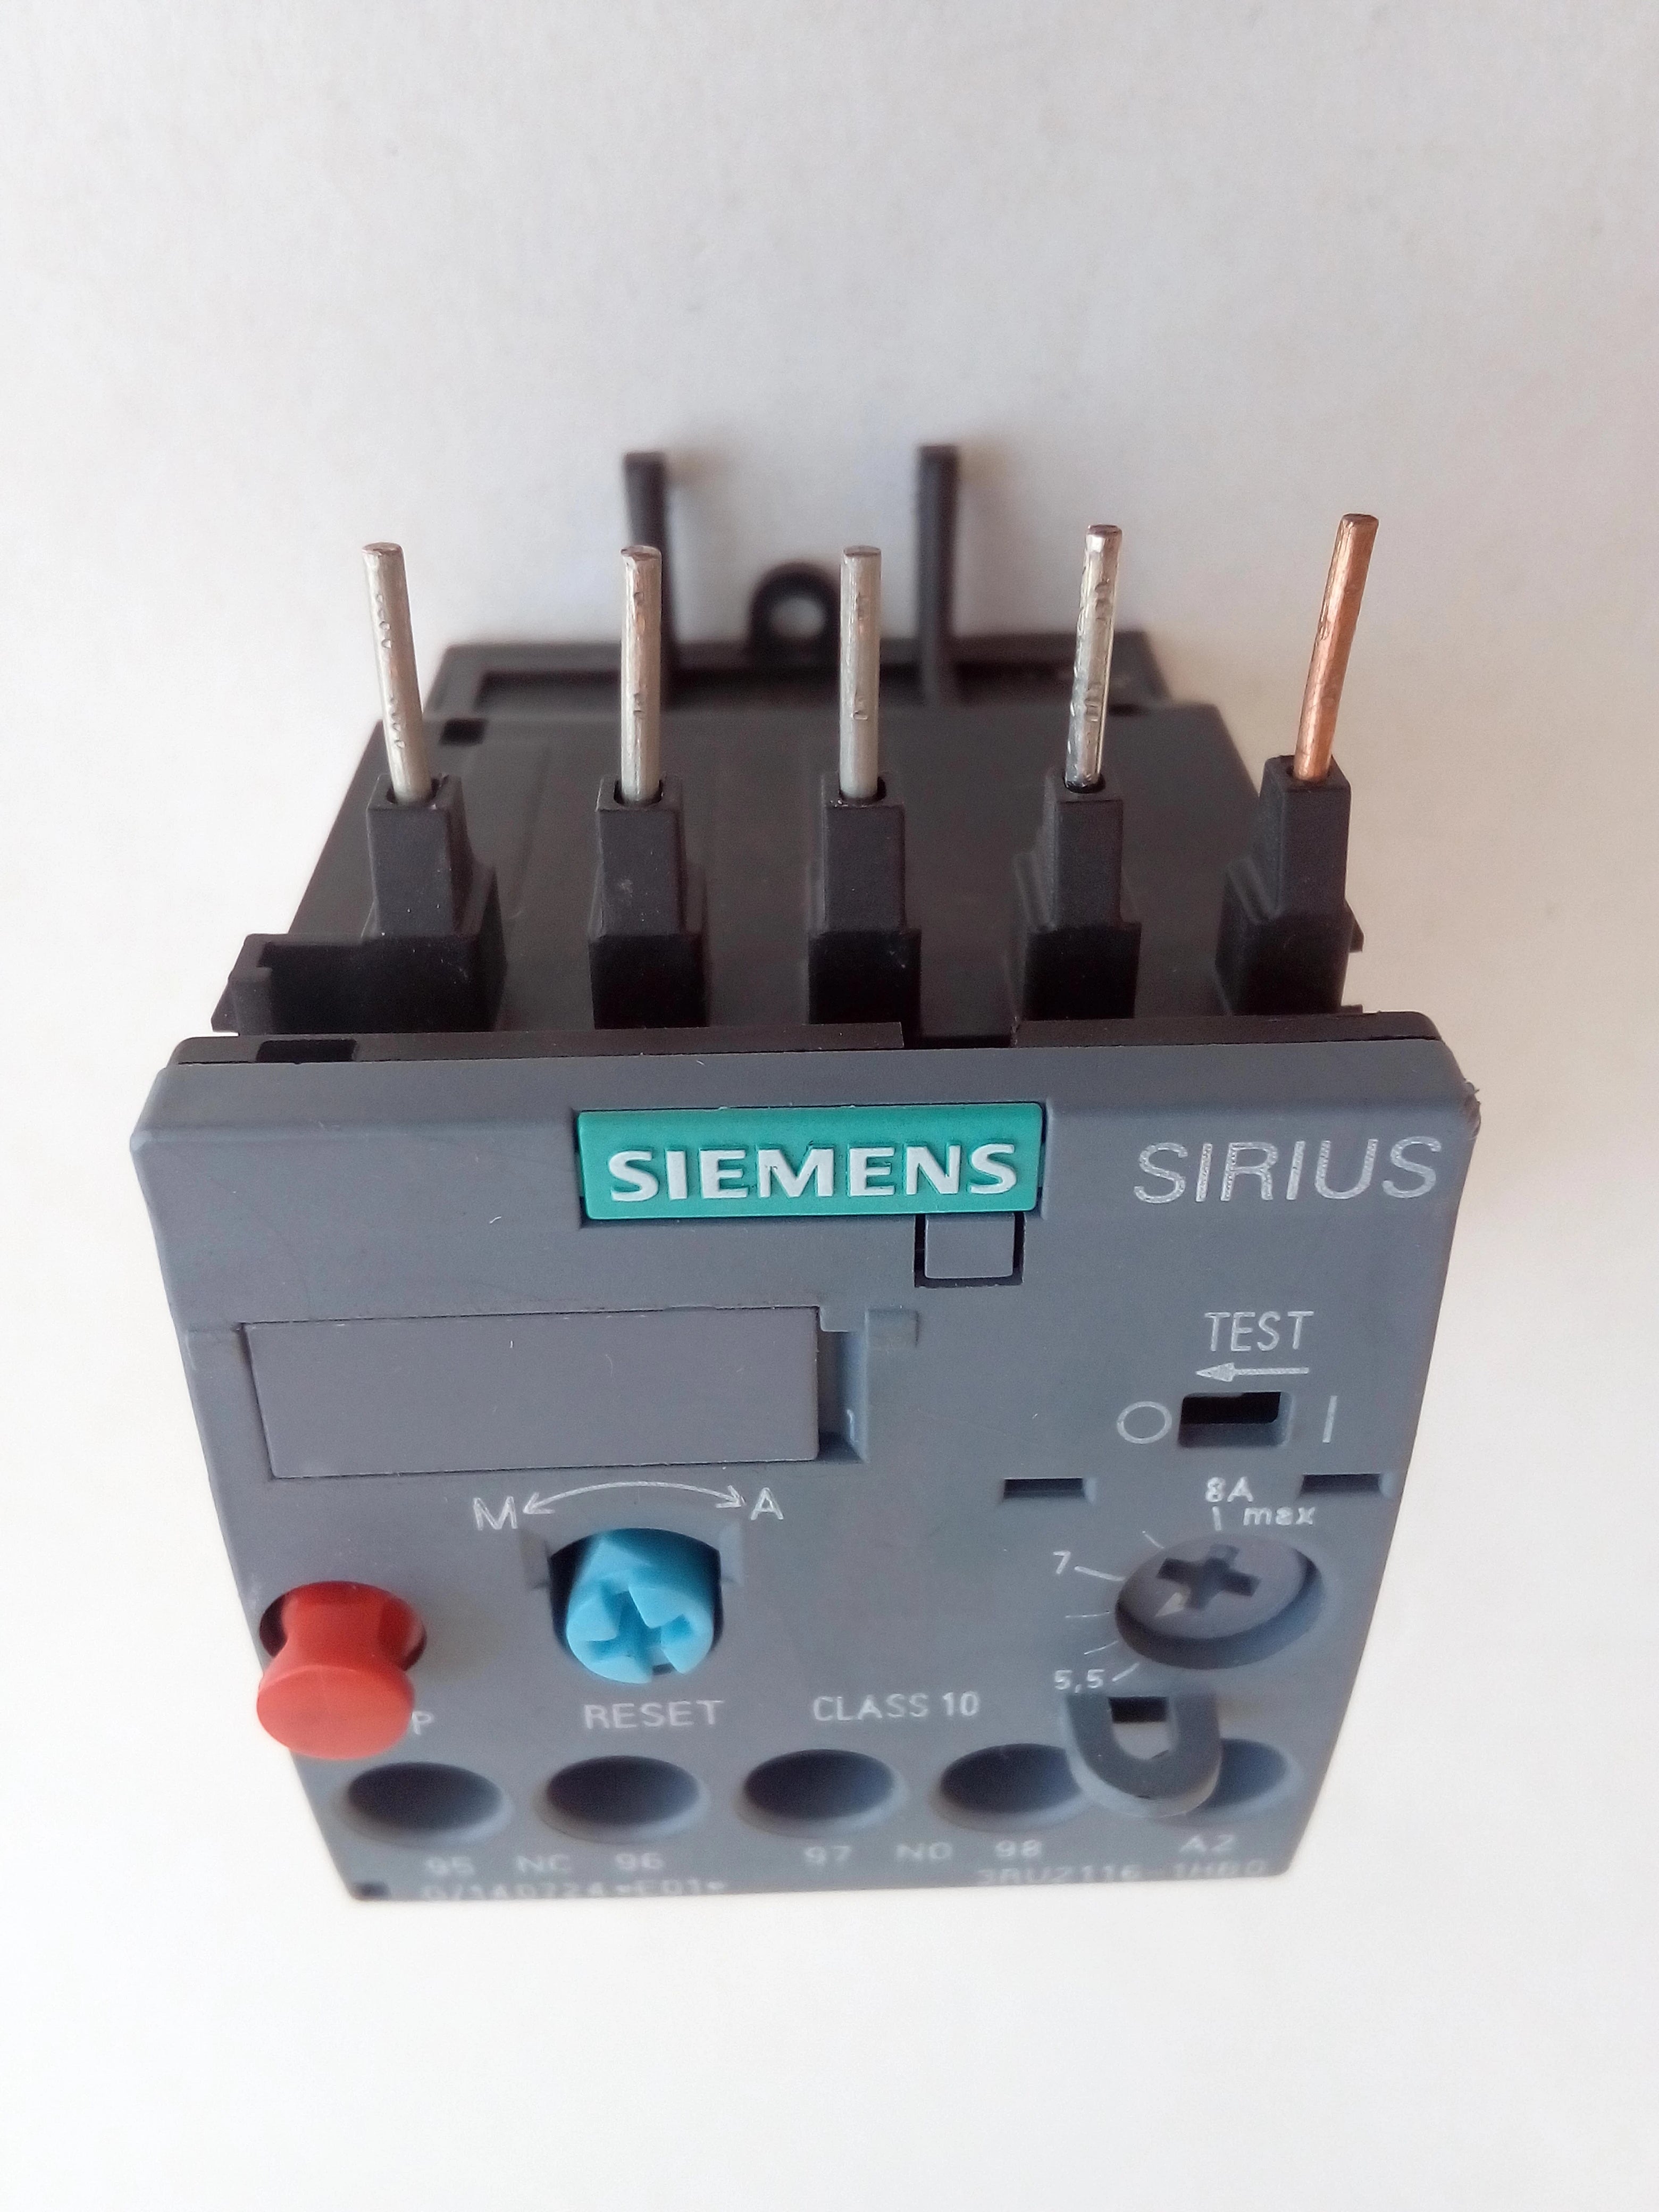 Relevador Siemens 3RU2116-1HB0